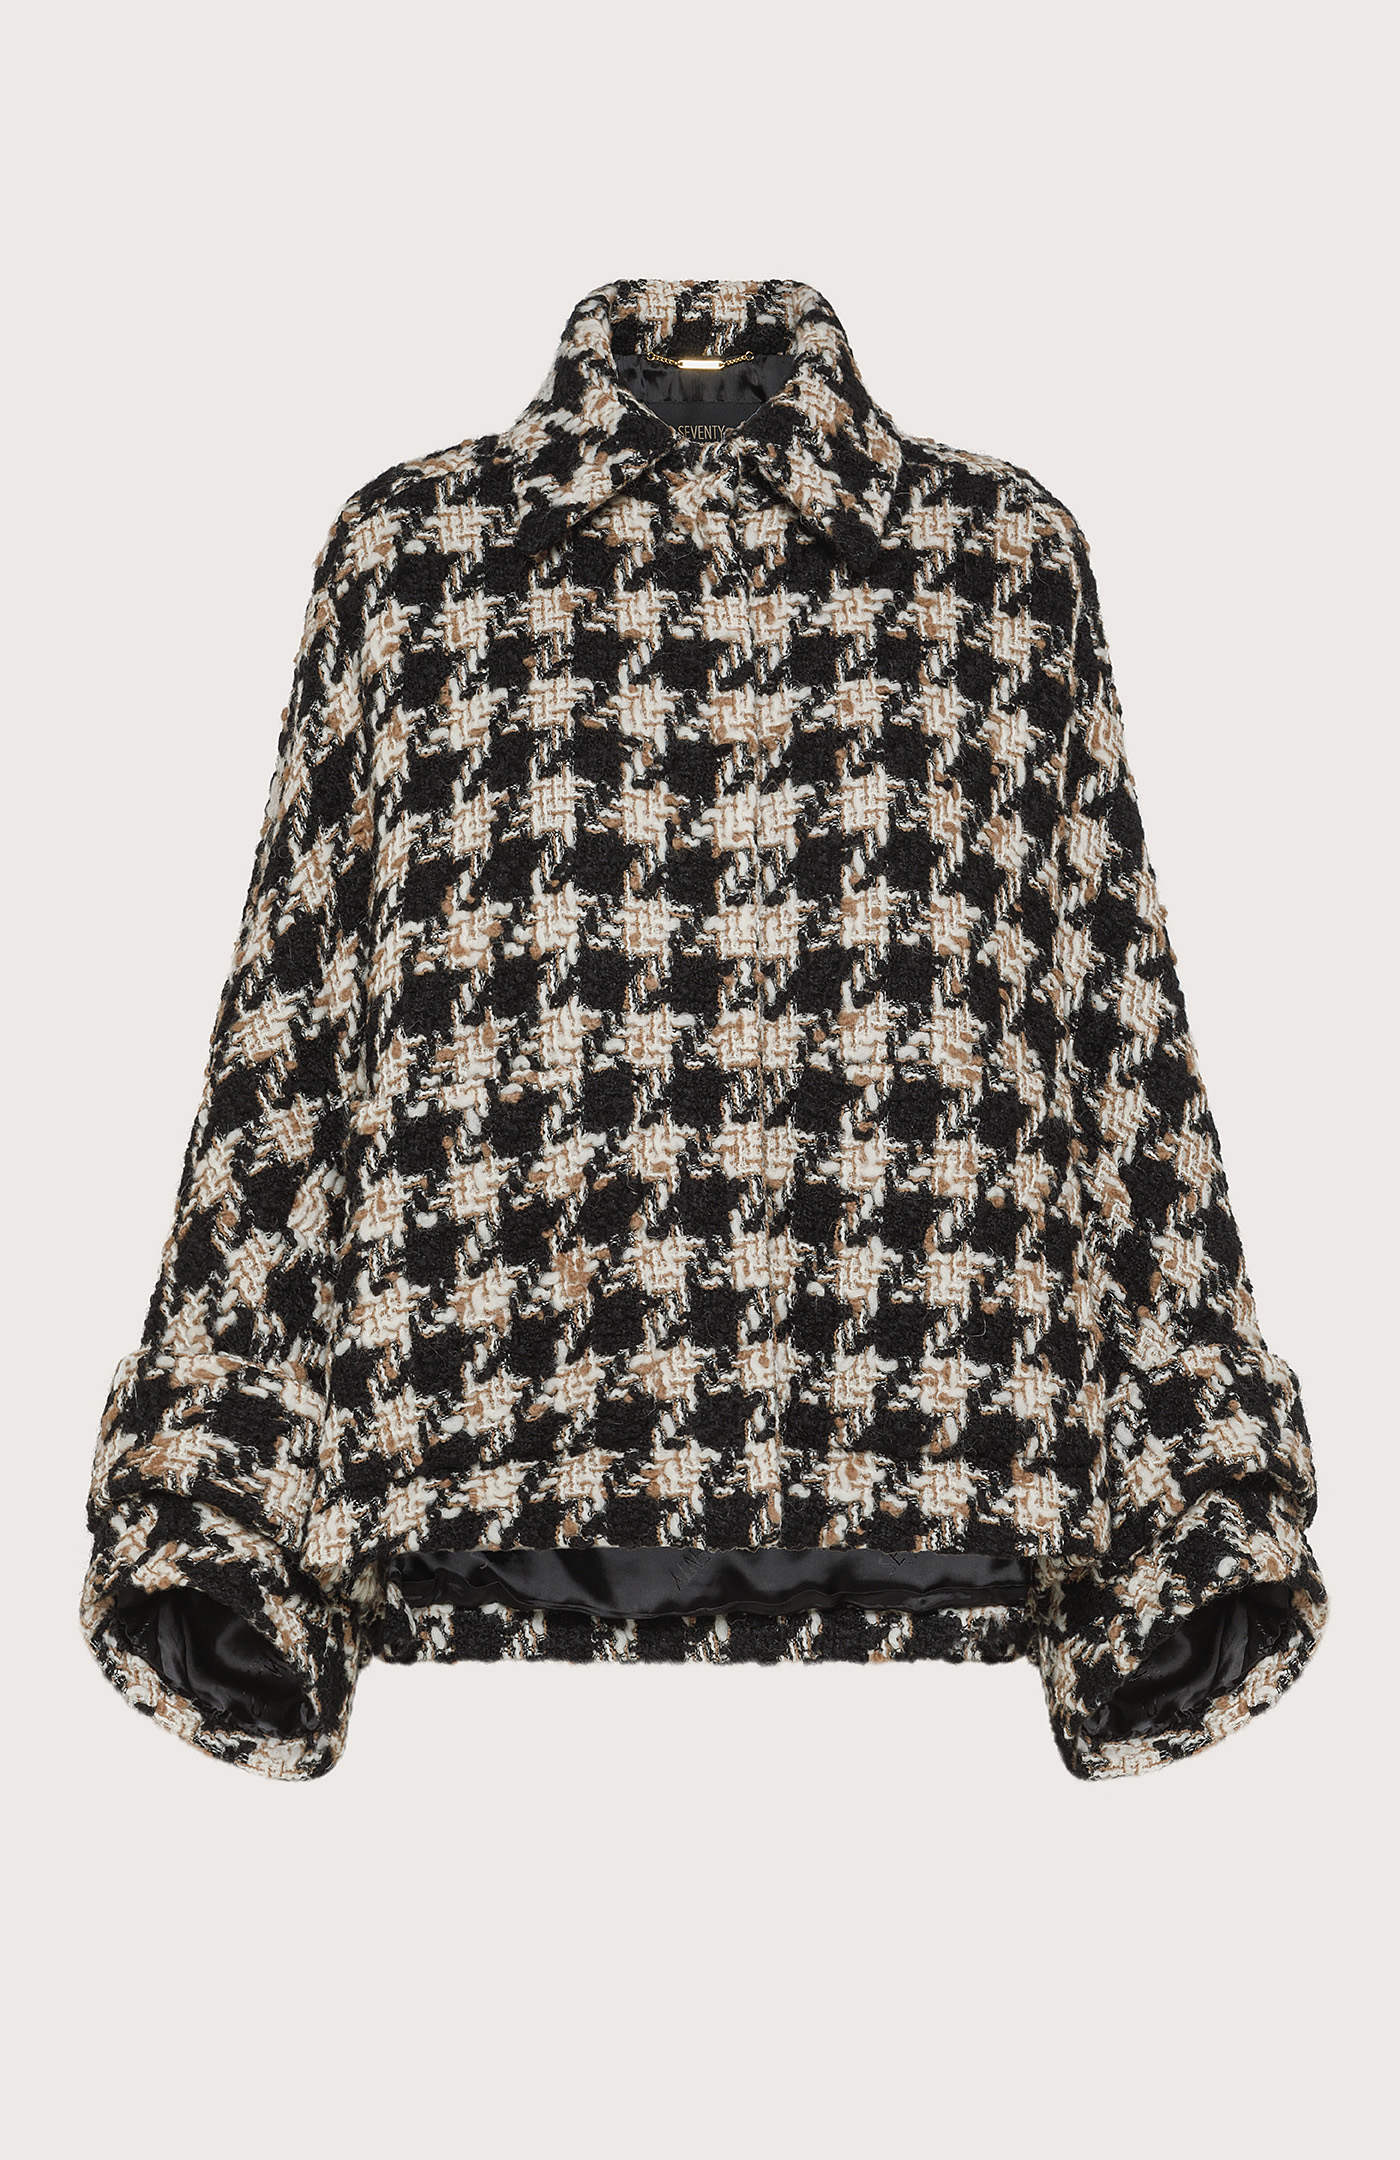 Chanel-fabric cape coat - Col. Neutral